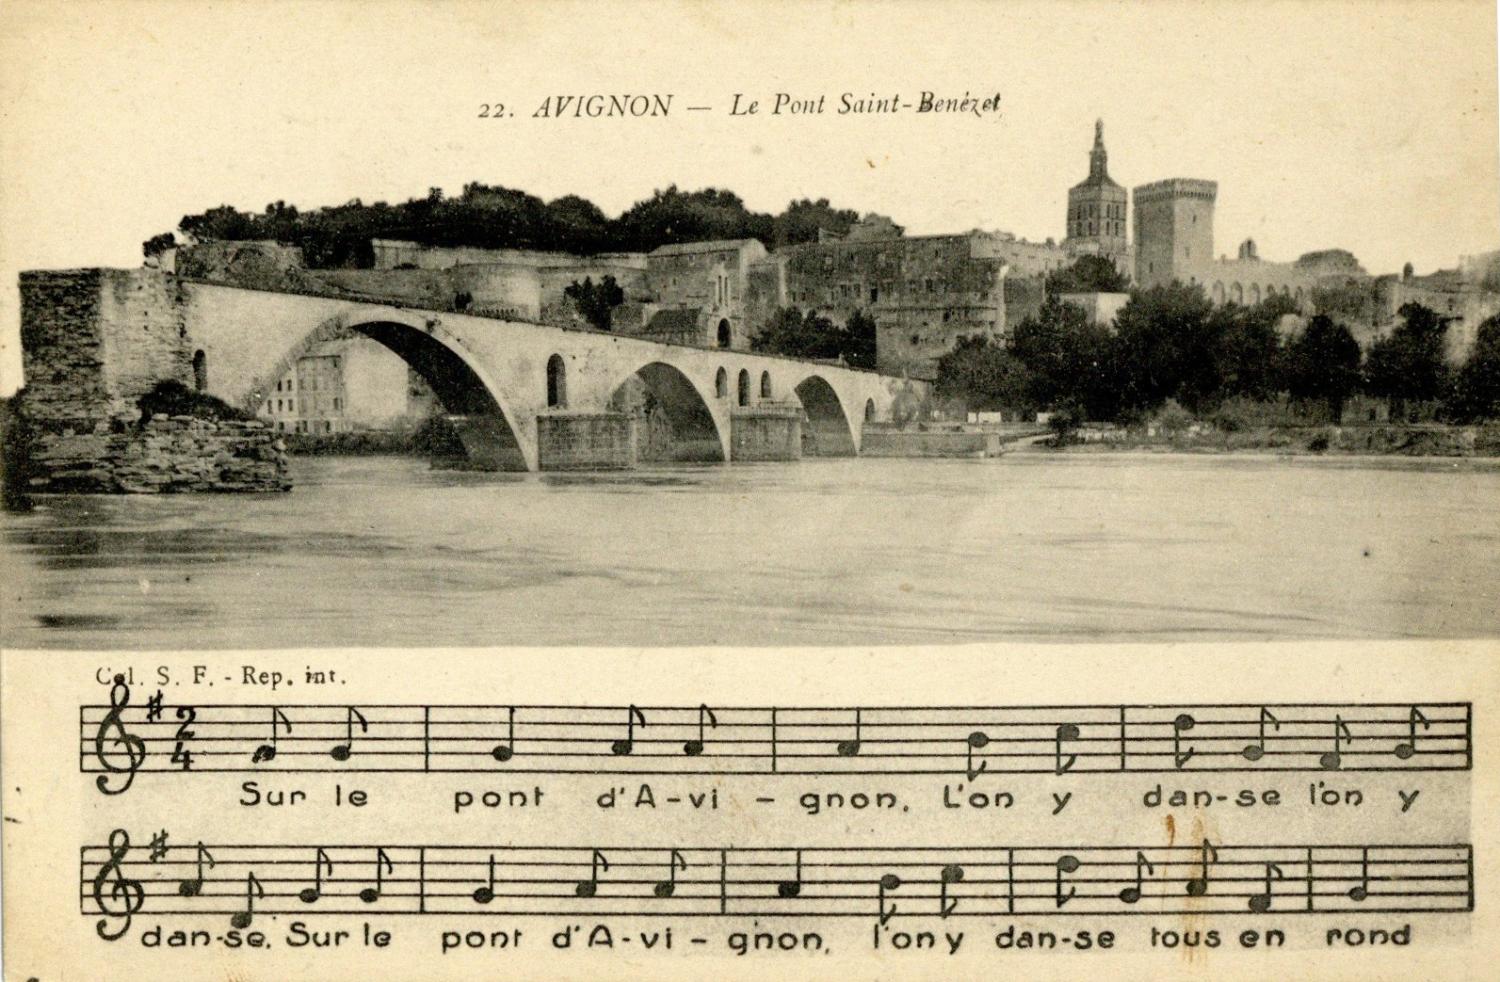 Avignon - Le Pont St-Bénézet